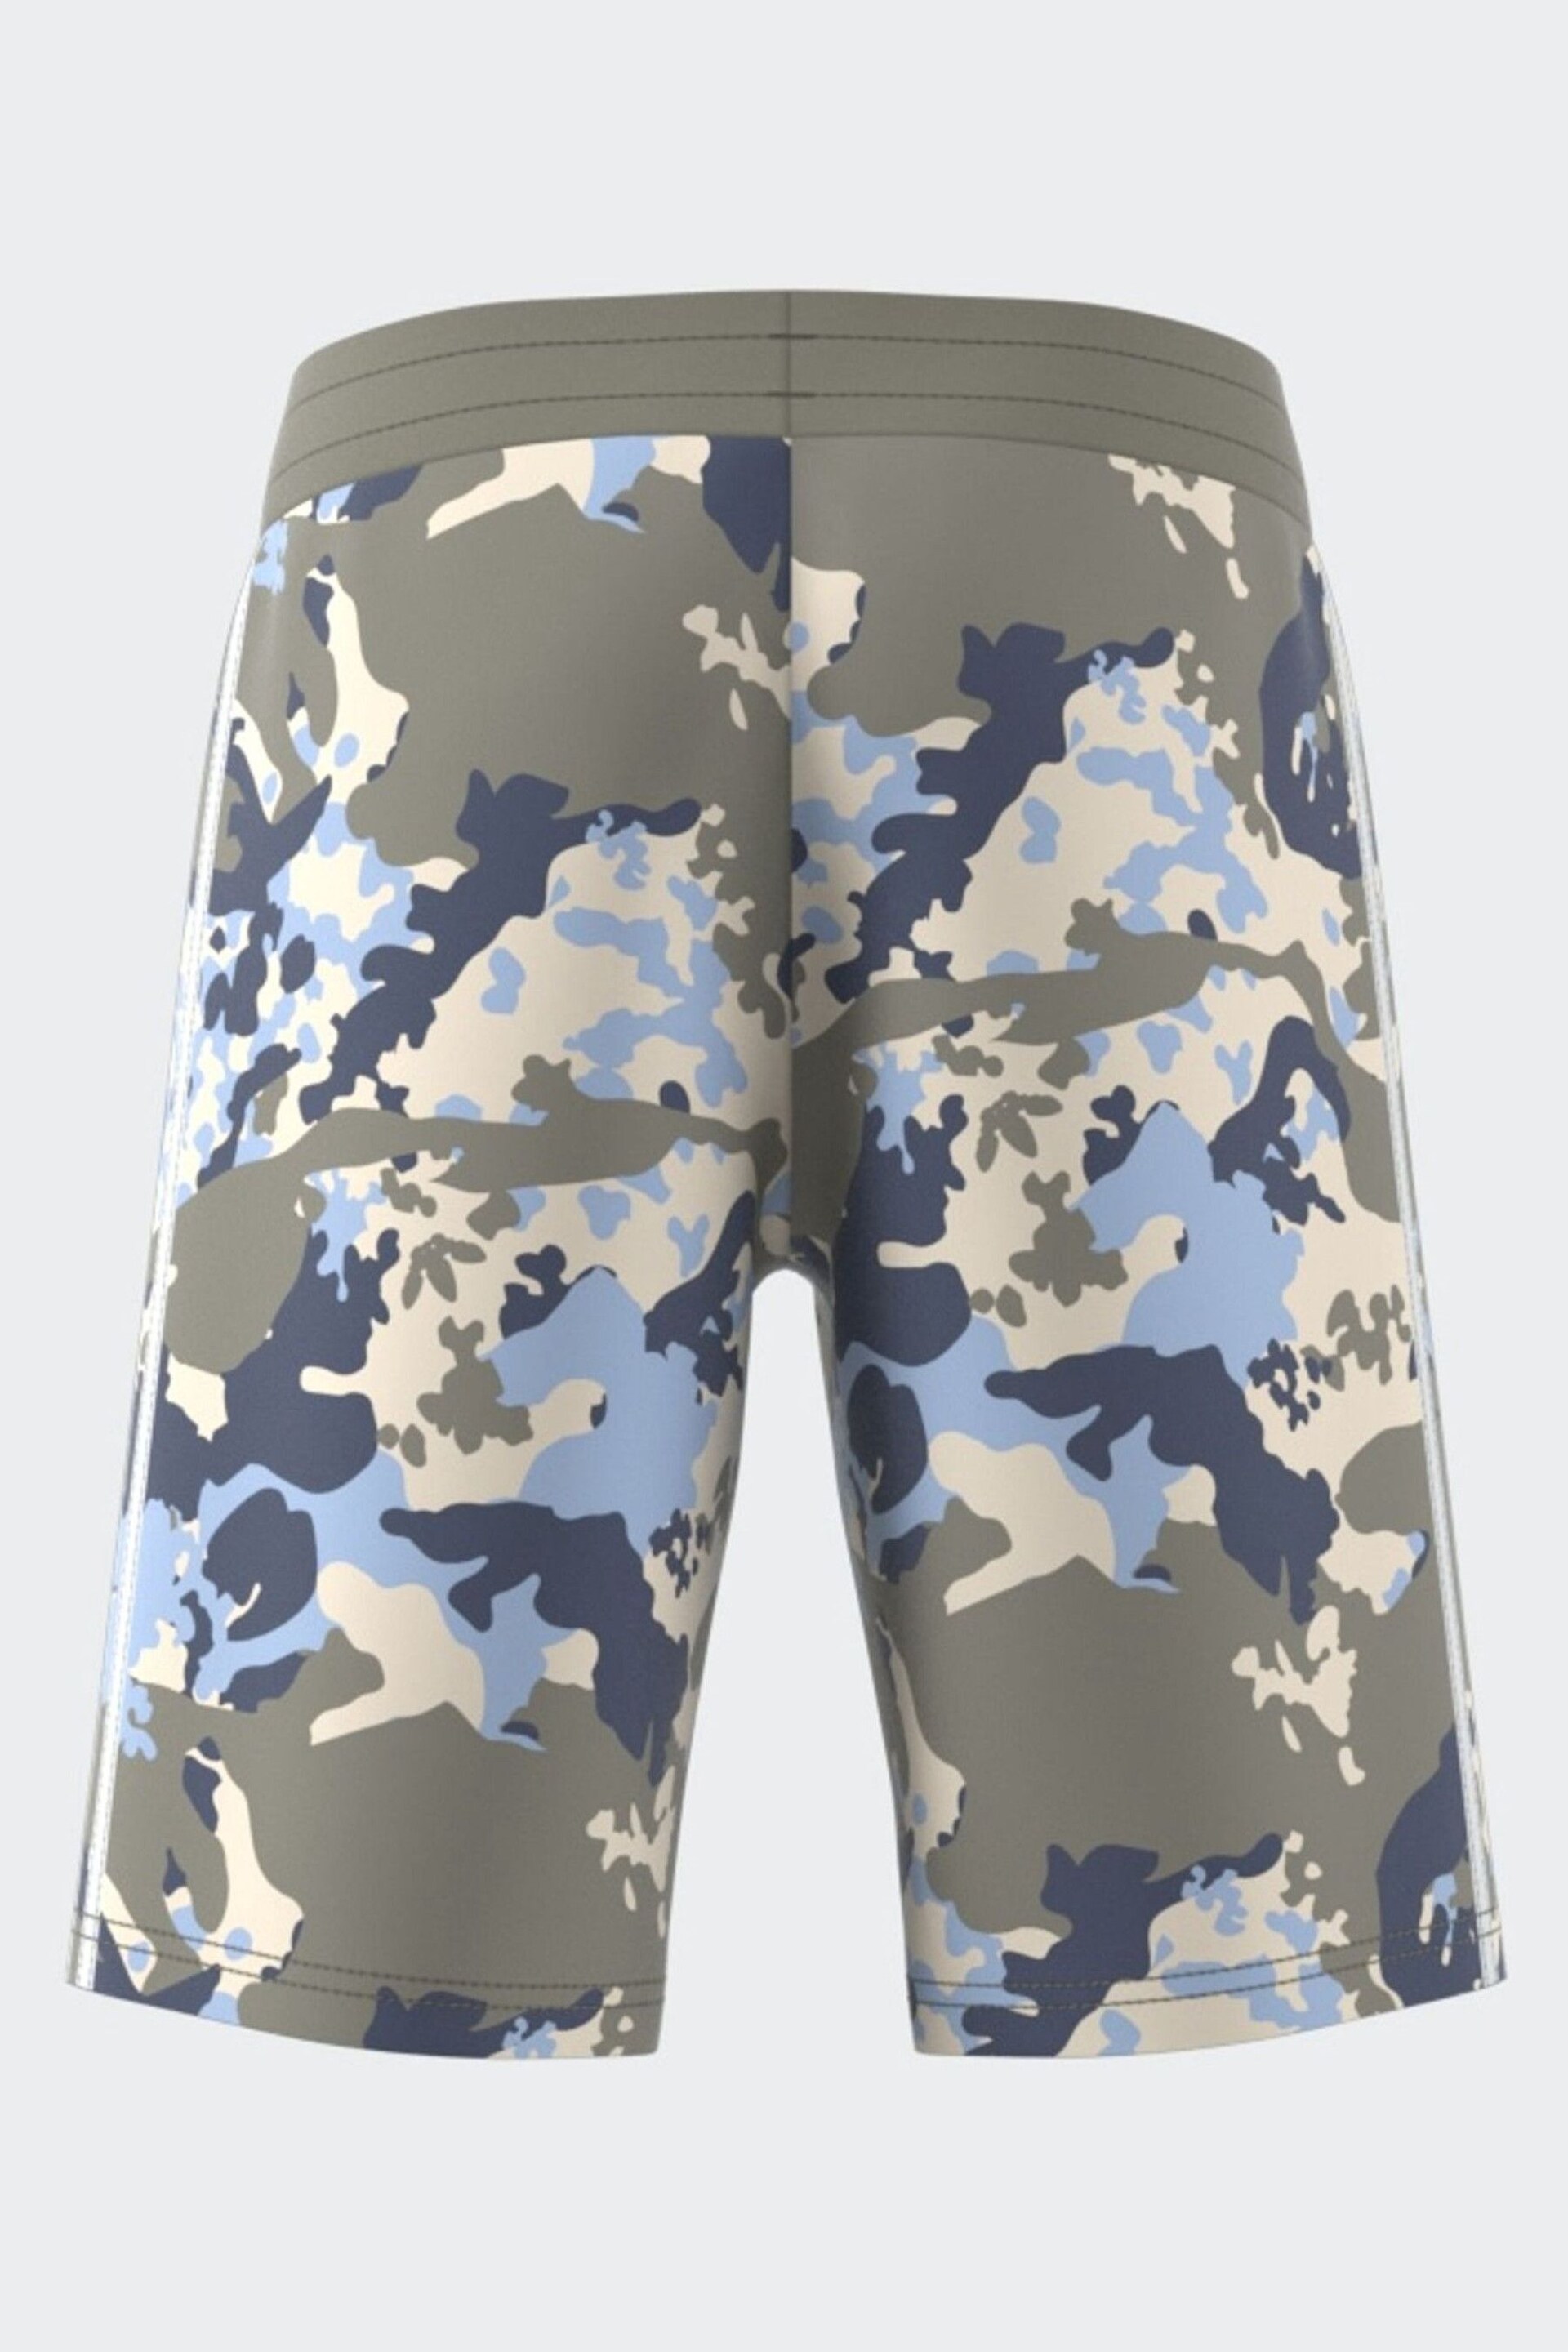 adidas Originals Grey/Blue Camo Shorts - Image 2 of 11